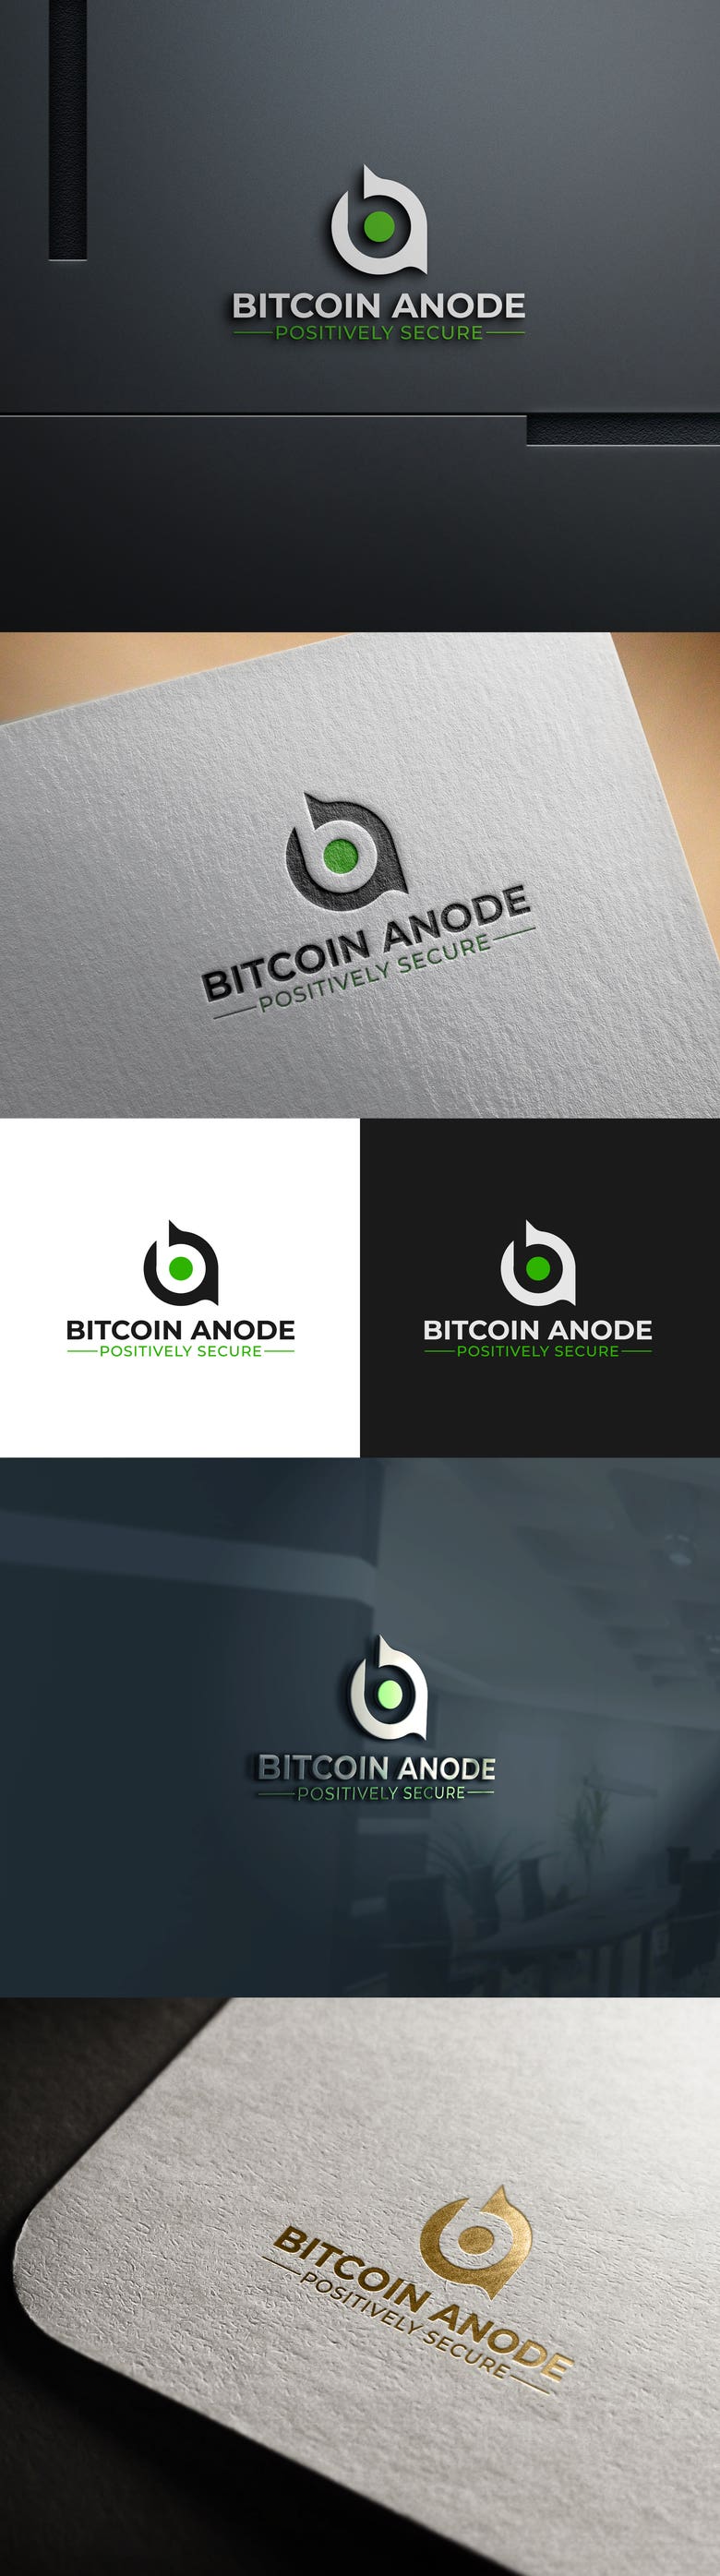 Bitcoin Anode logo